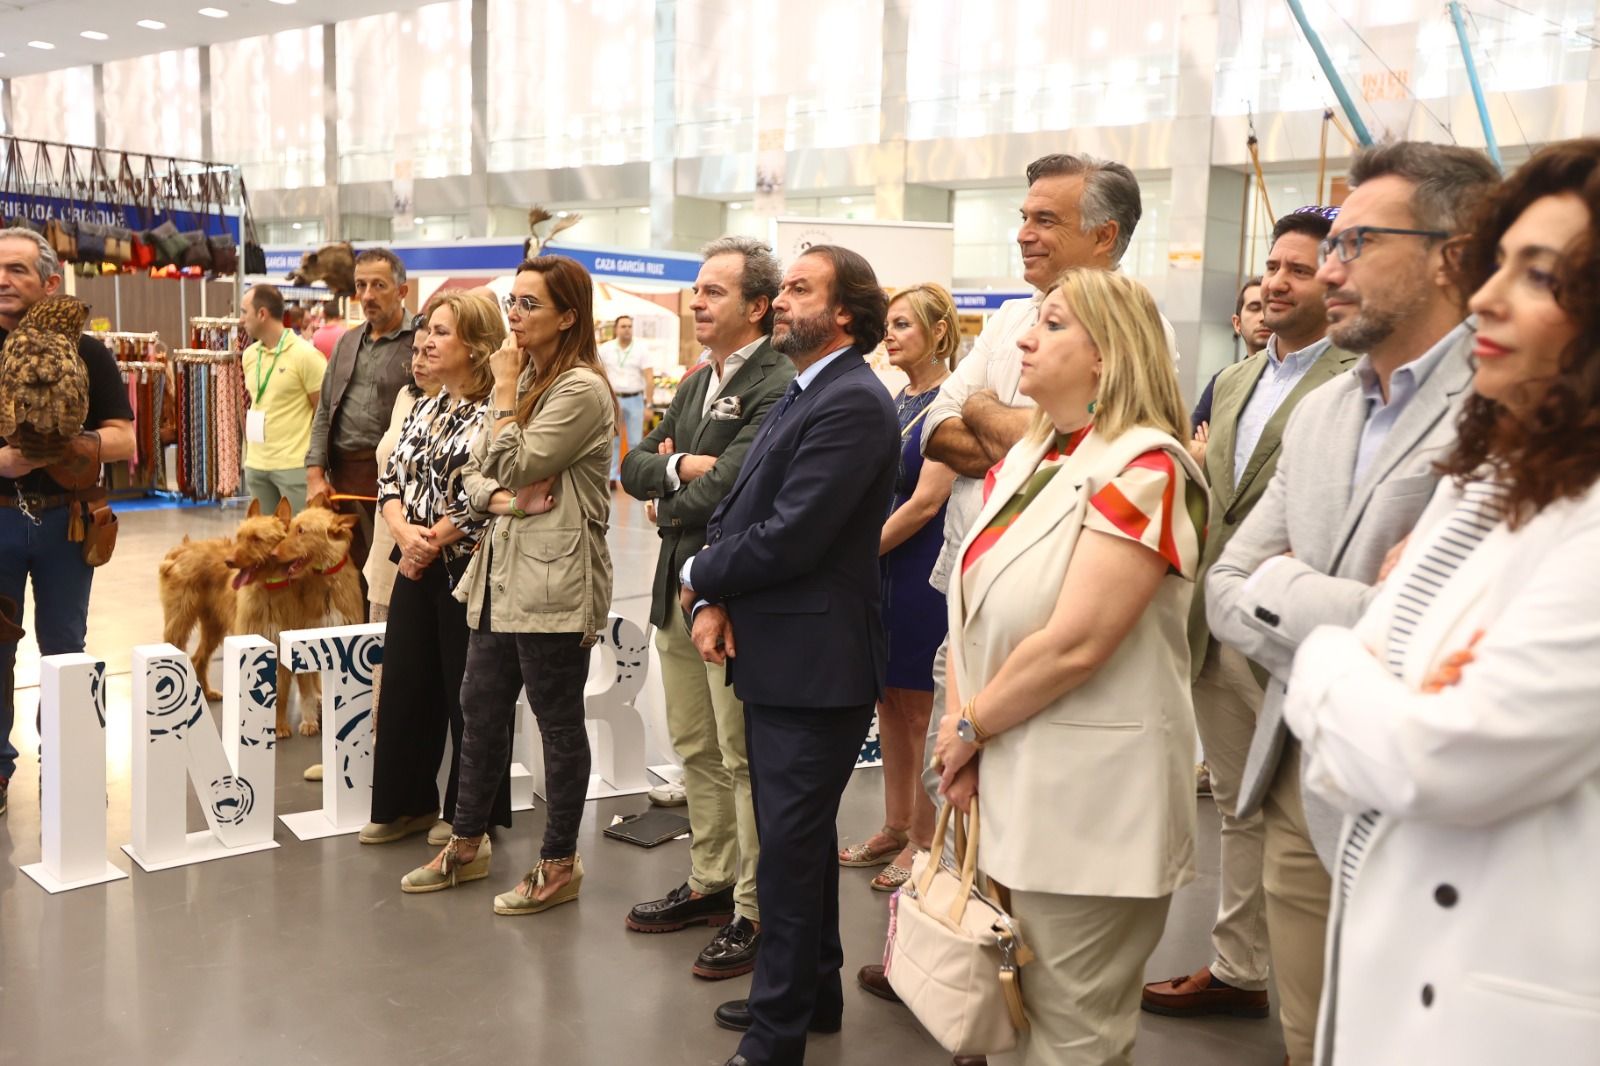 Intercaza celebra su 25 aniversario en el Centro de Exposiciones